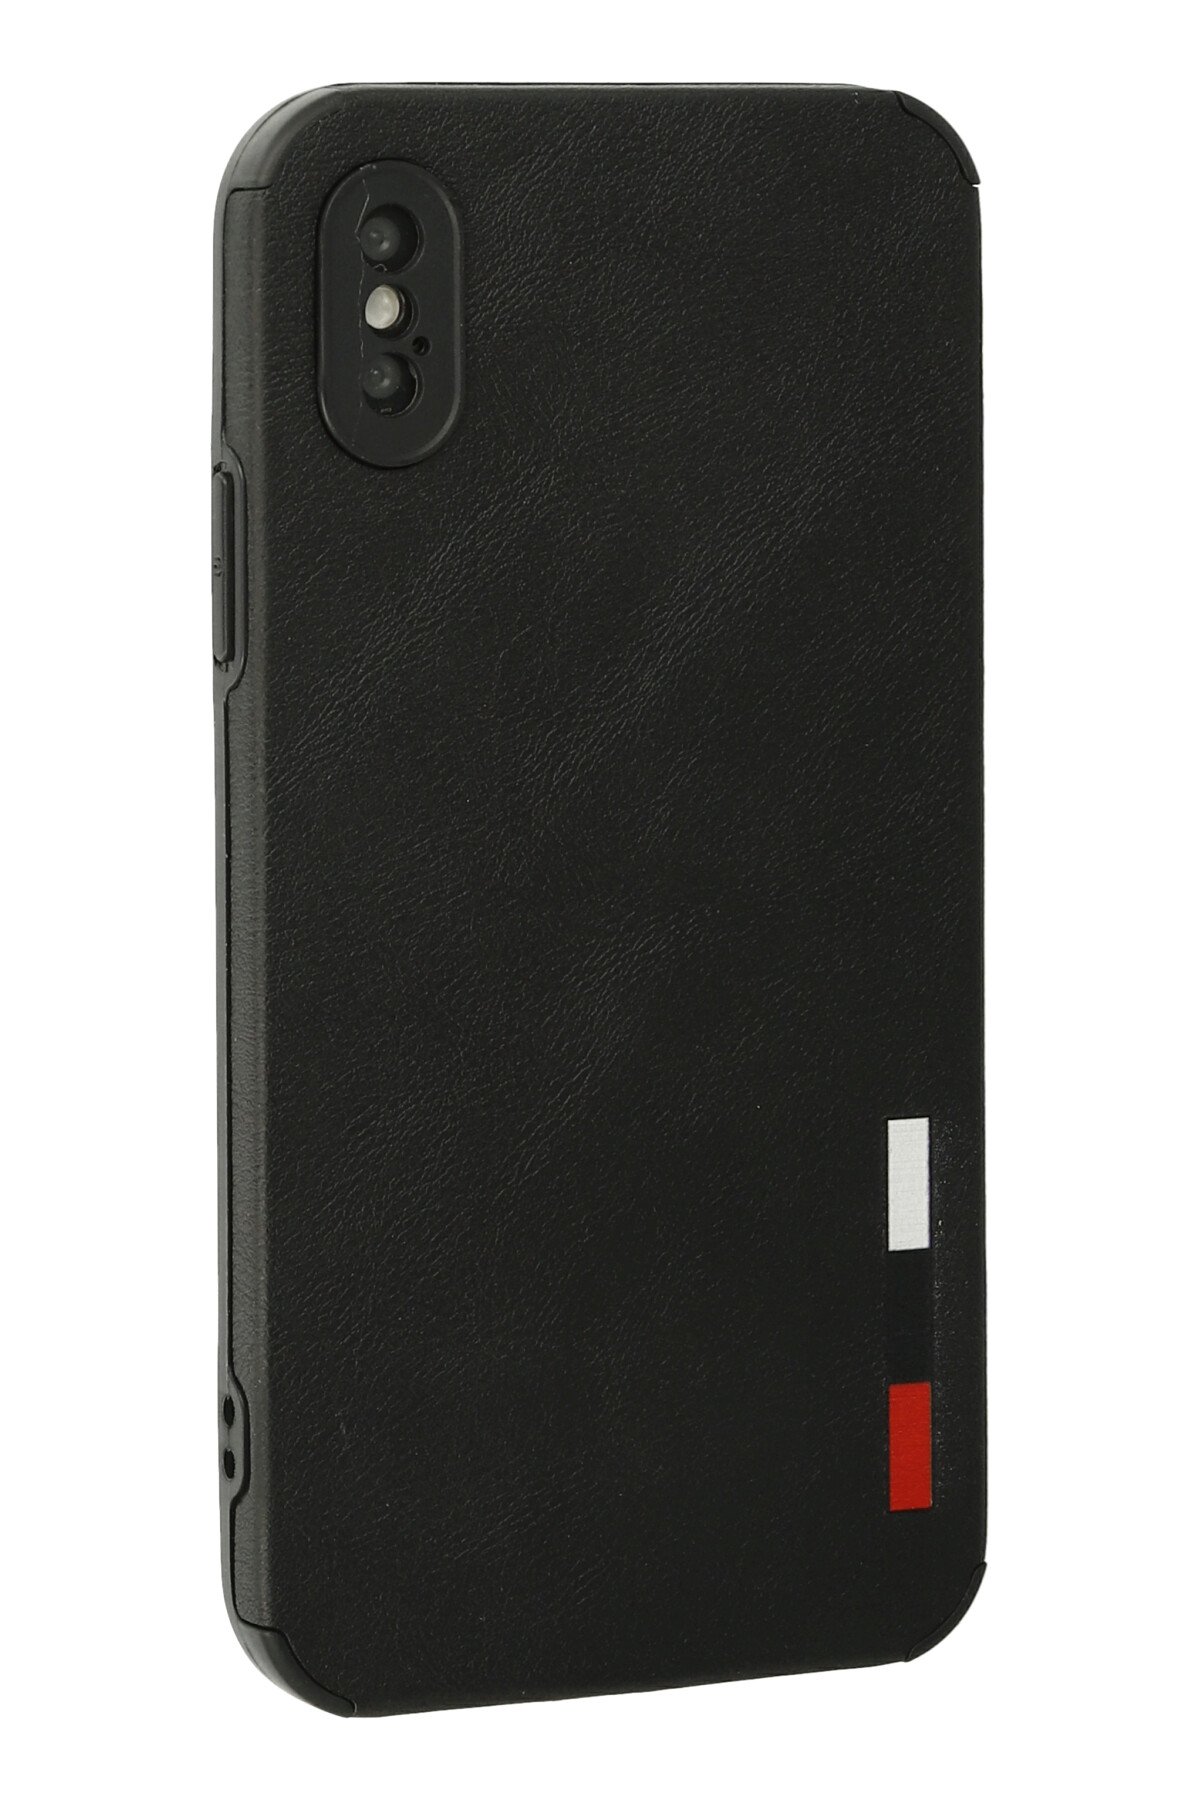 Newface iPhone X Kılıf Miami Şeffaf Silikon - Kırmızı